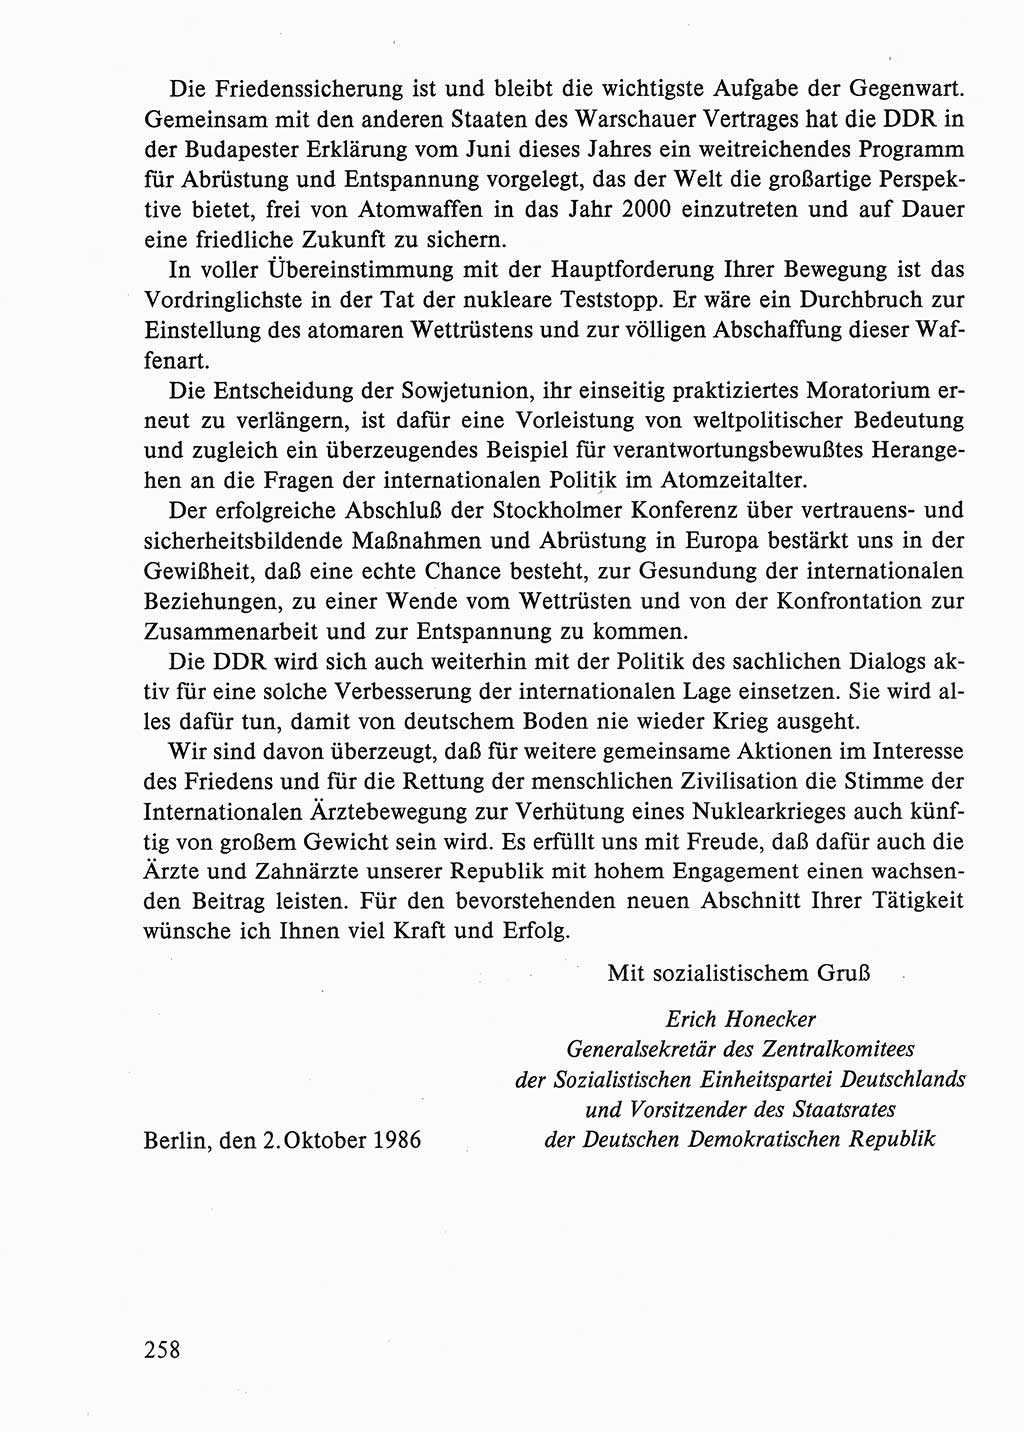 Dokumente der Sozialistischen Einheitspartei Deutschlands (SED) [Deutsche Demokratische Republik (DDR)] 1986-1987, Seite 258 (Dok. SED DDR 1986-1987, S. 258)